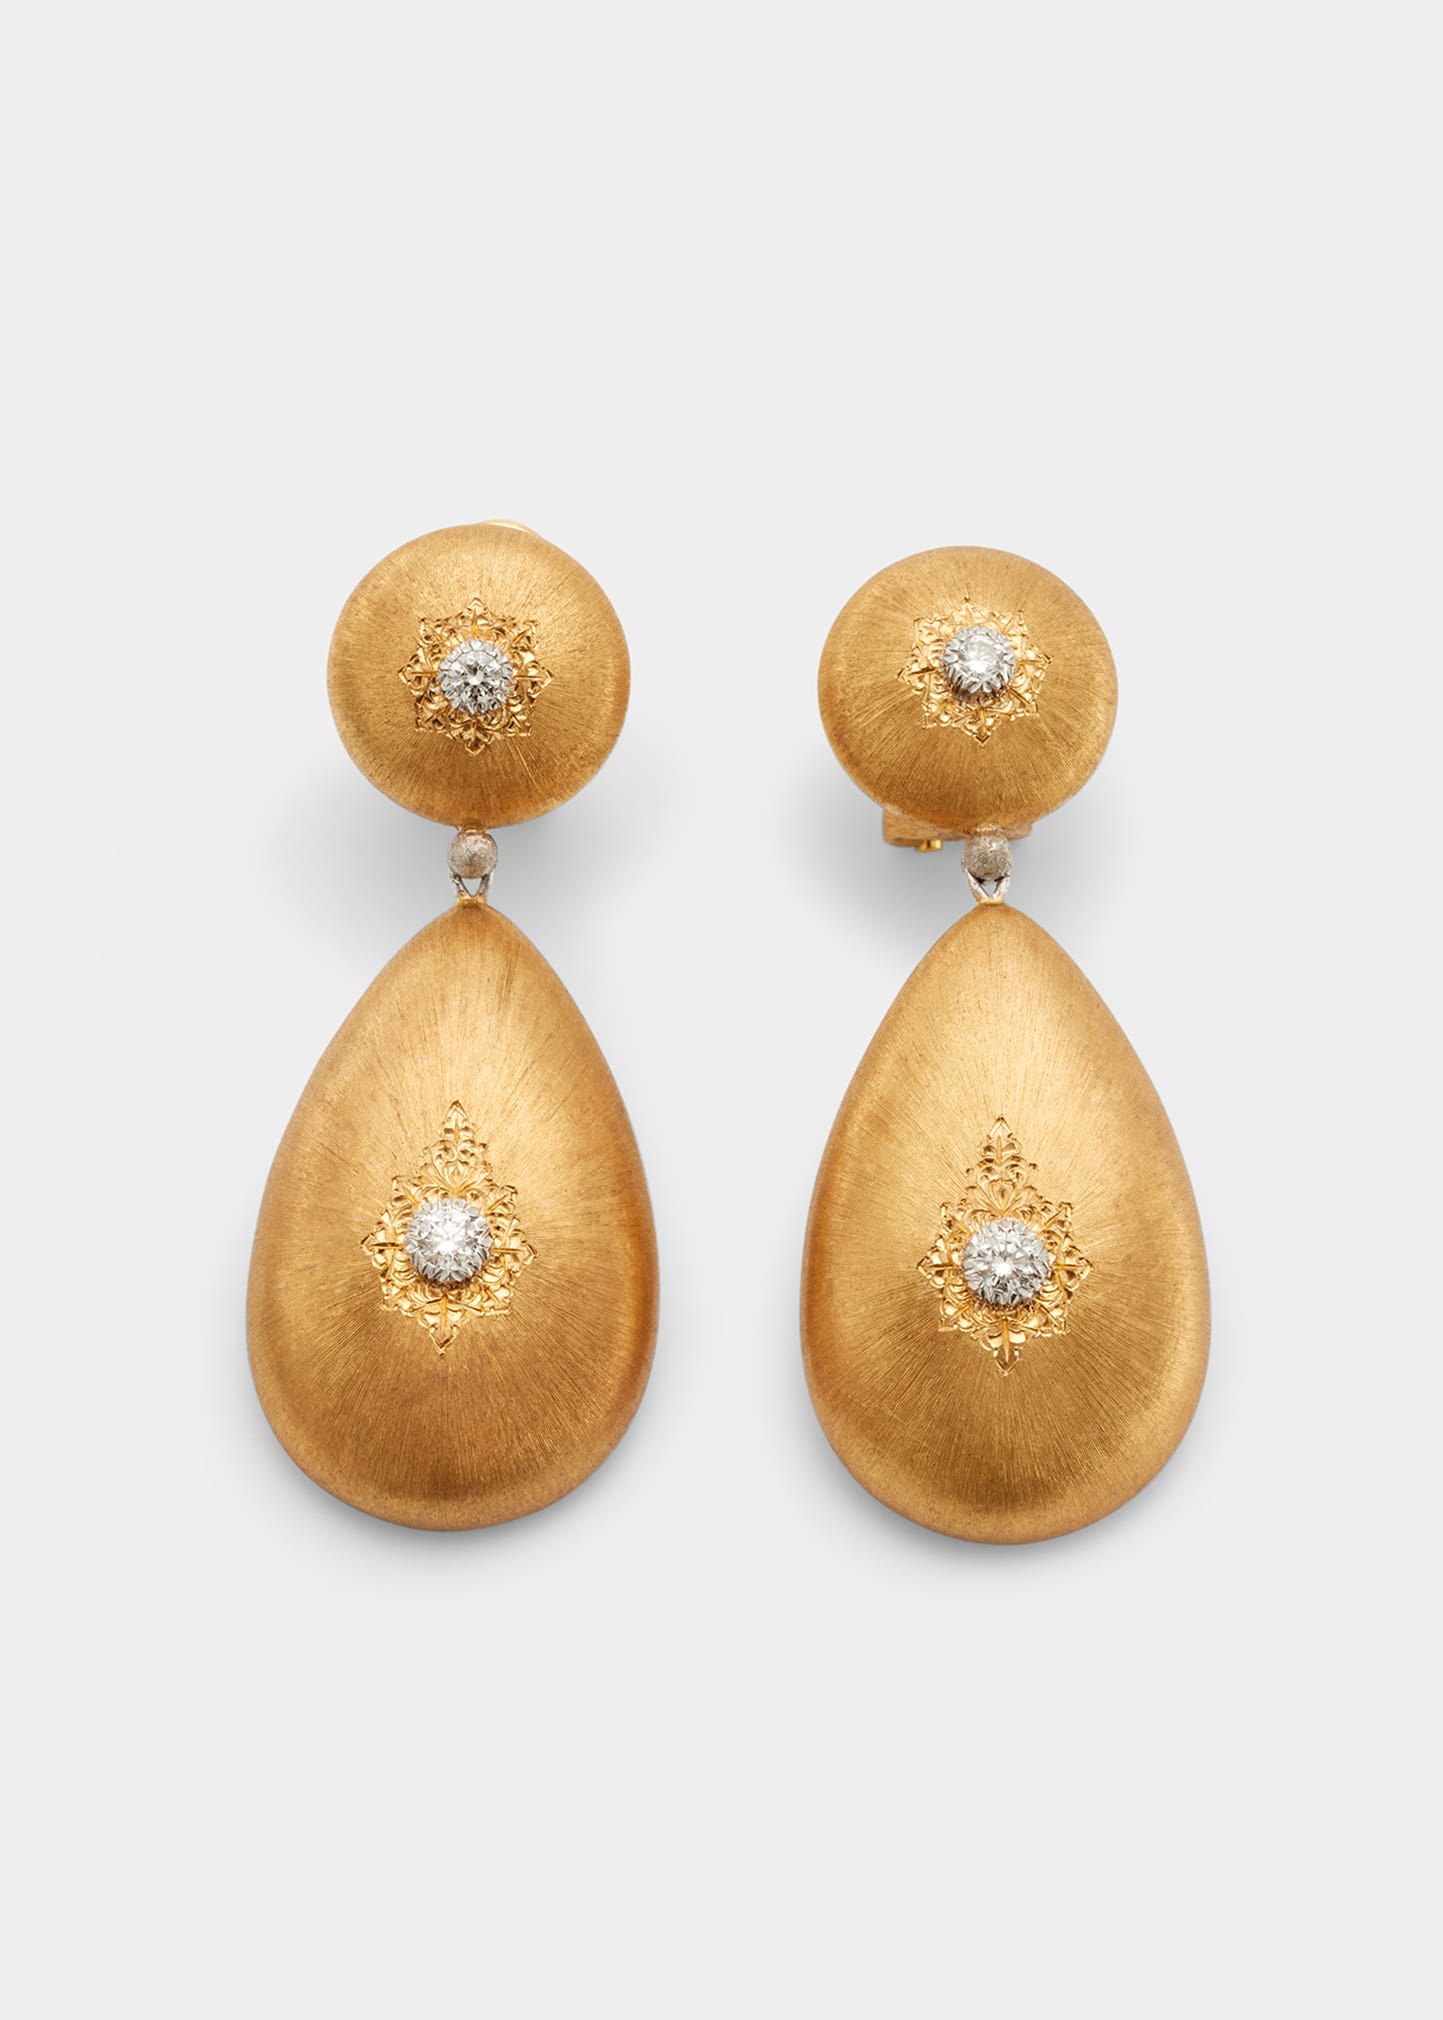 Macri Classica Yellow/White Gold Pendant Earrings